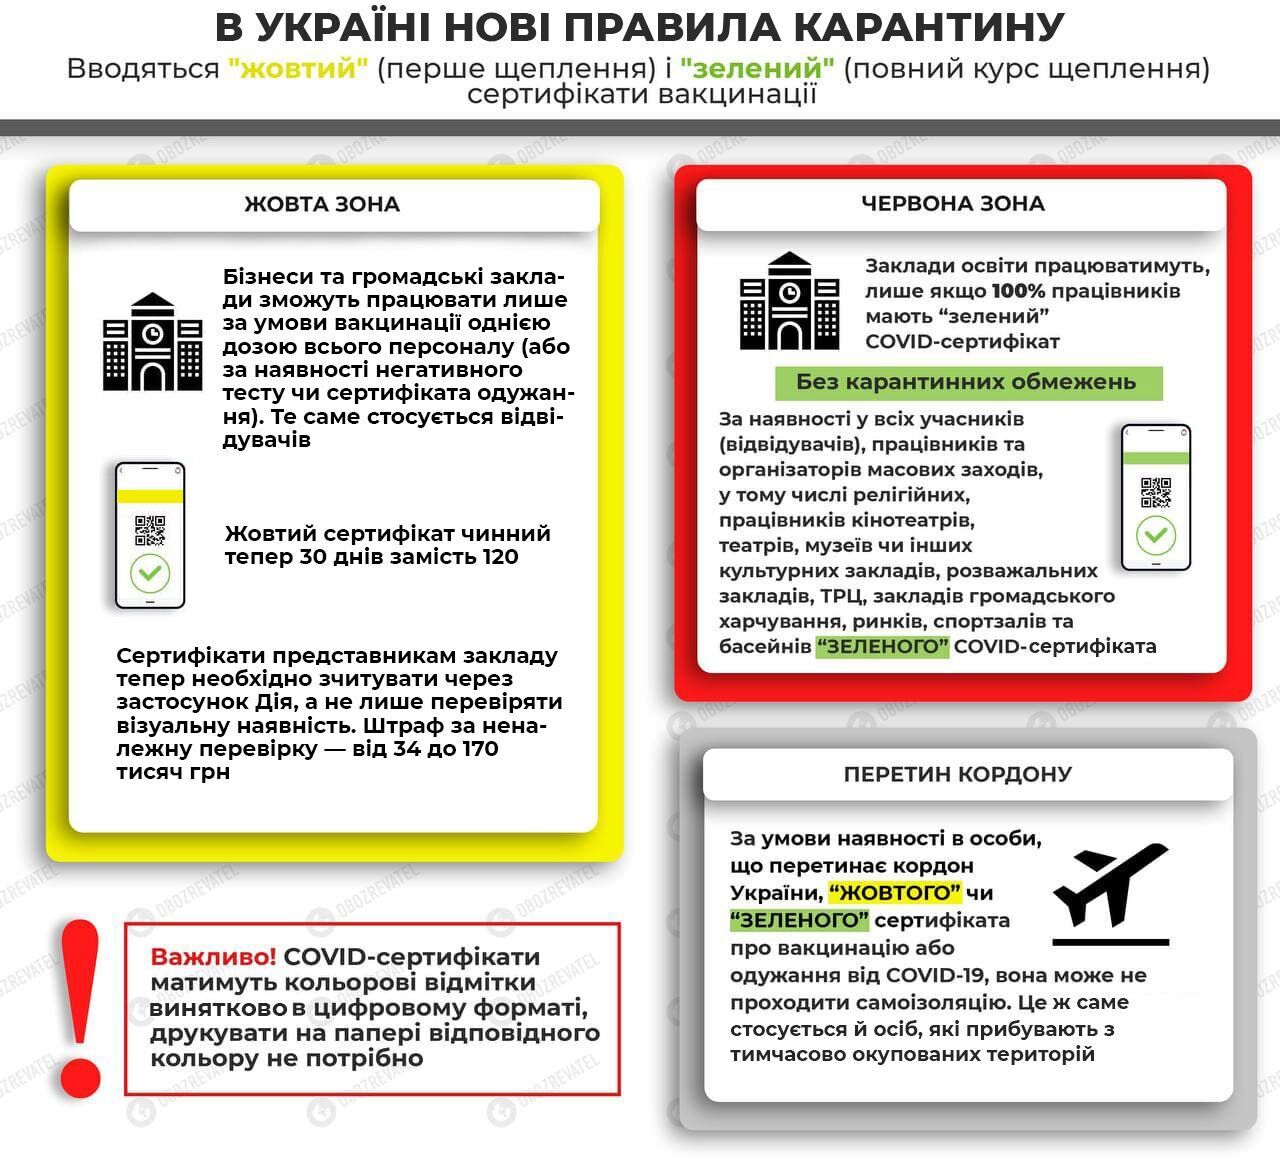 Правила карантина в Украине